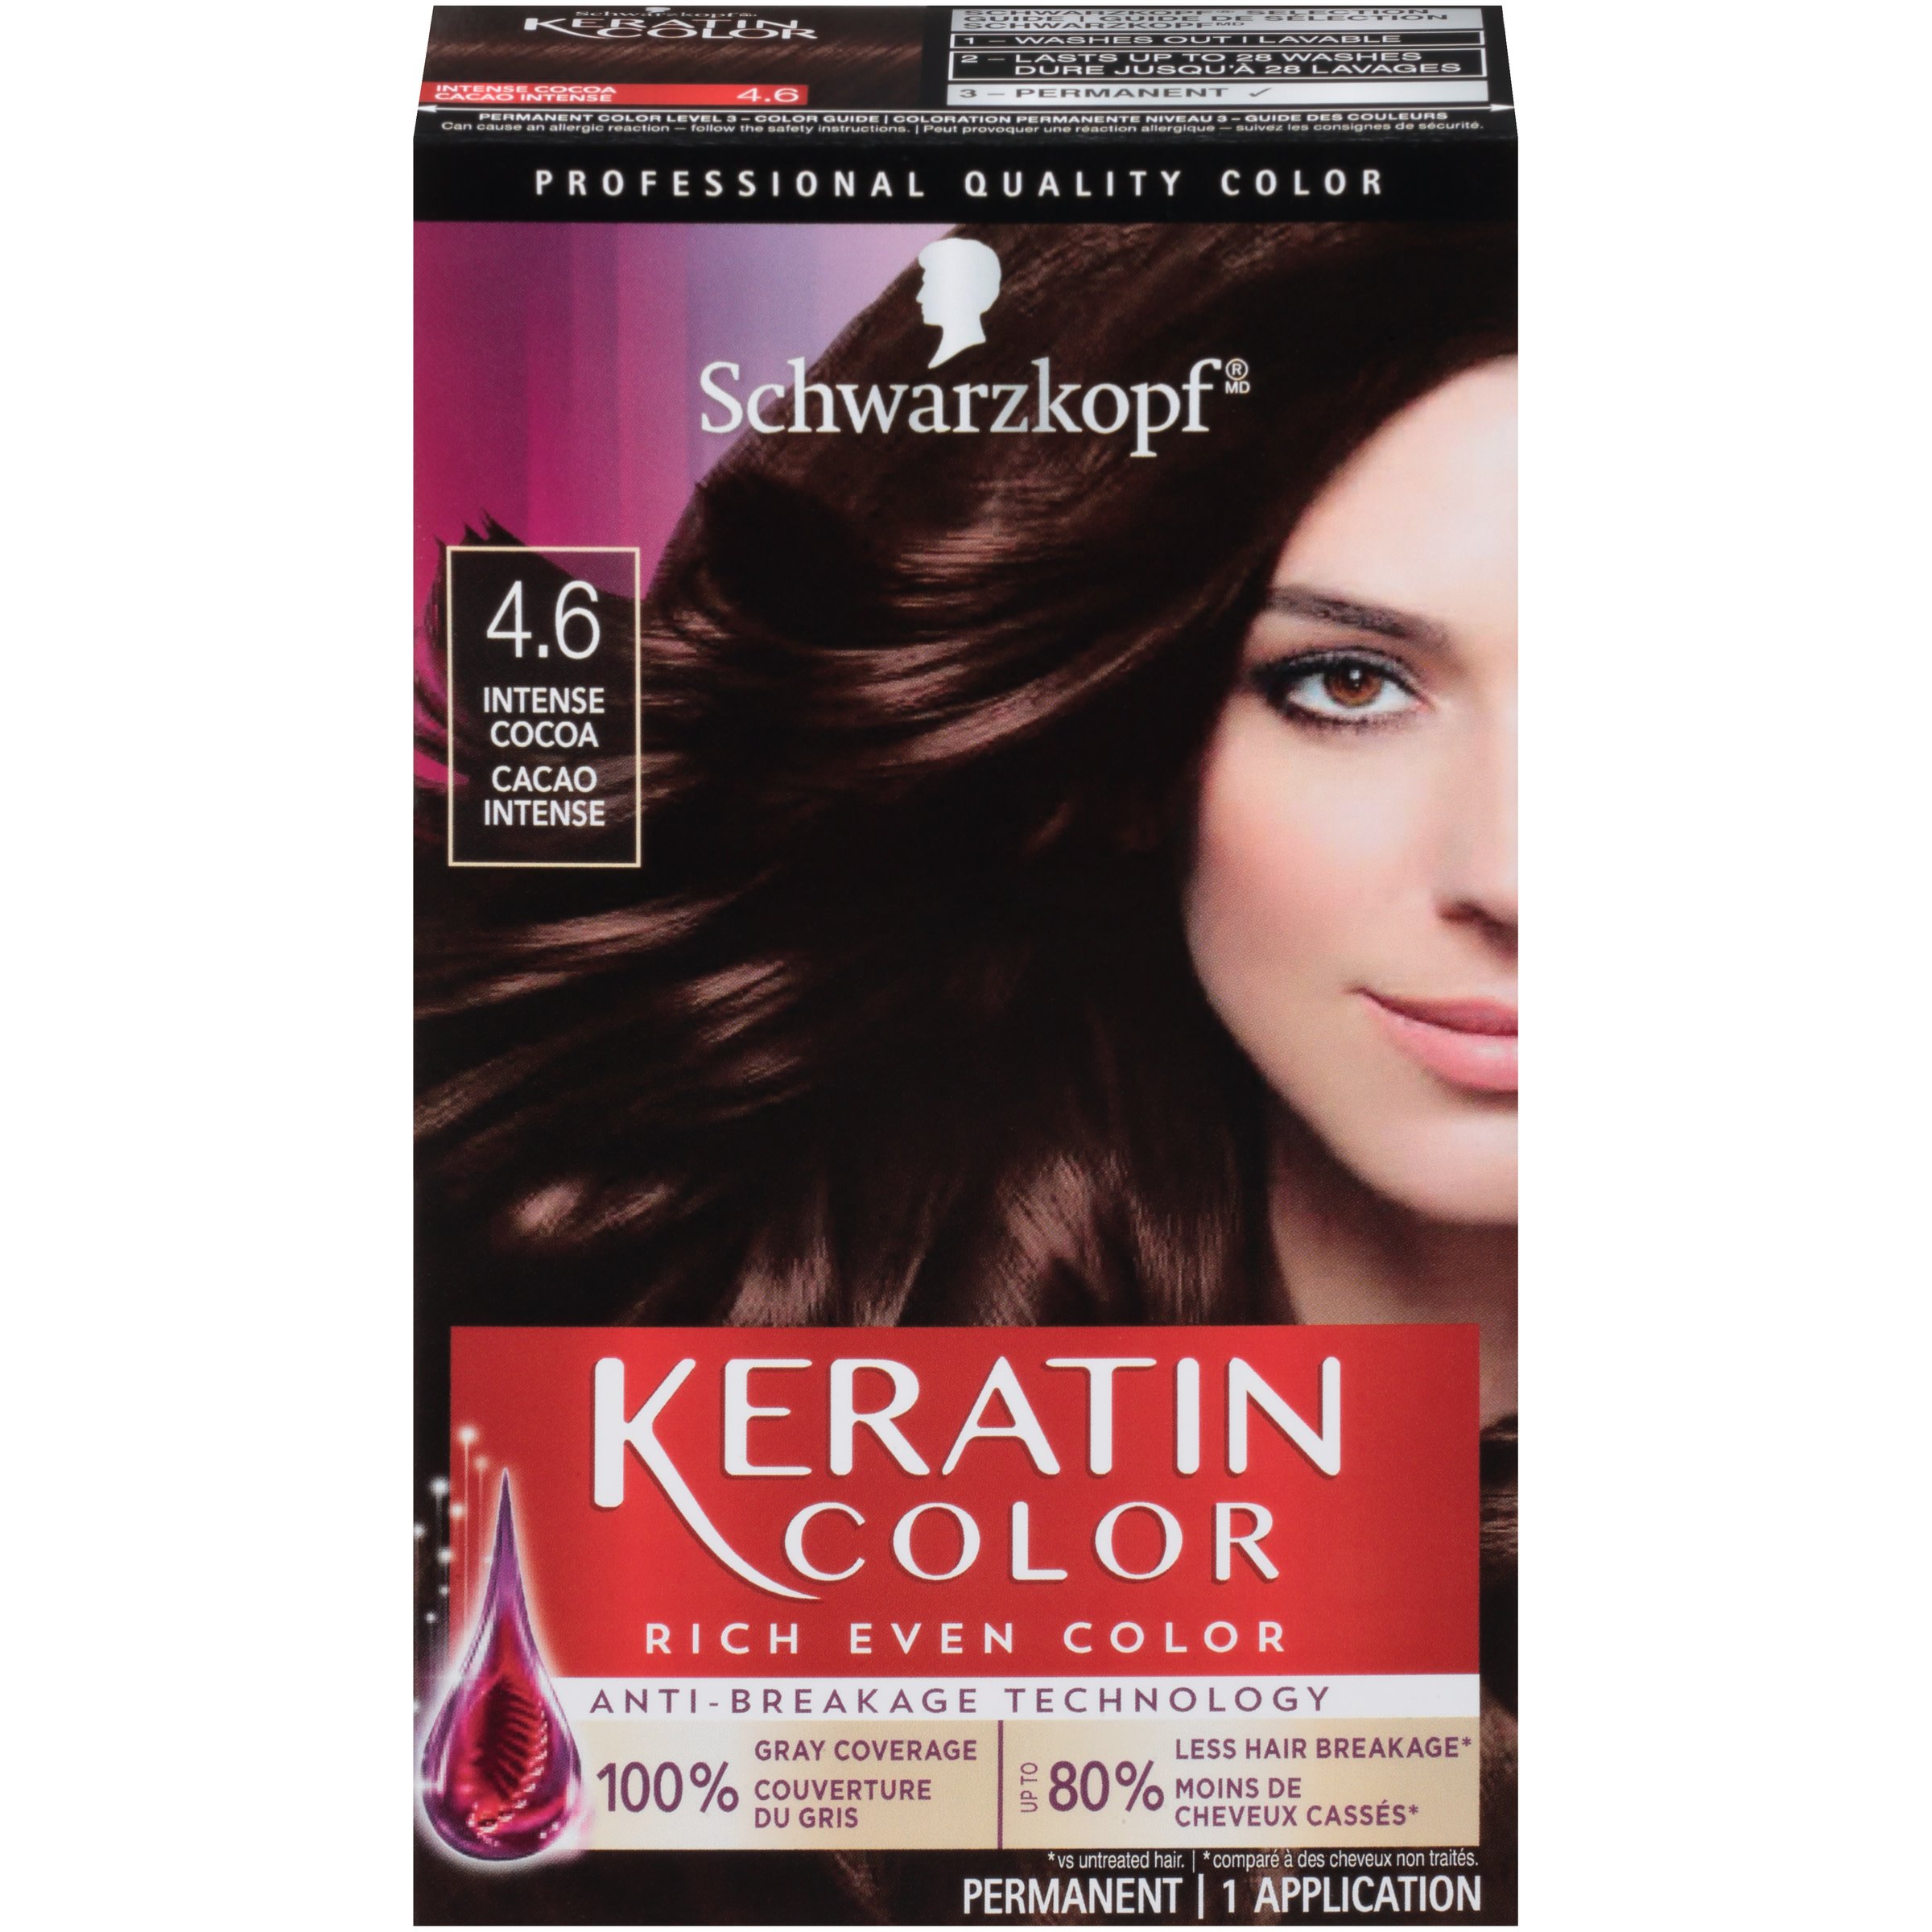 Kit Racines - Hair Coloration - Henkel